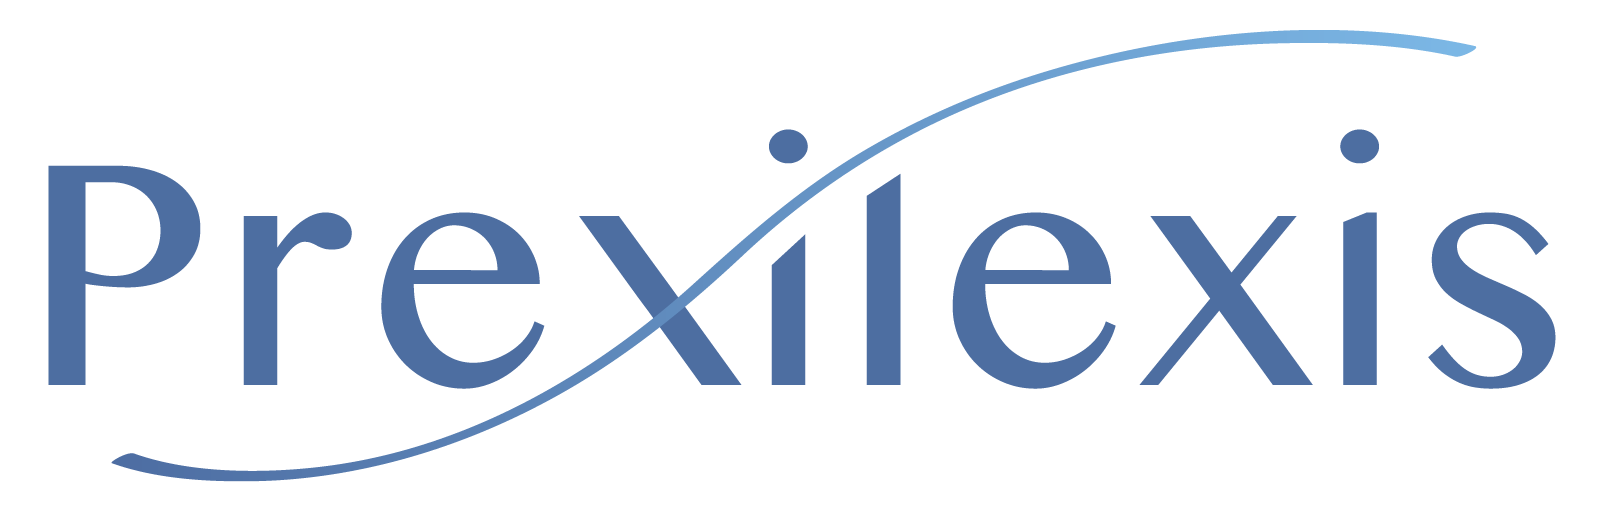 Logo Prexilexis sans la baseline